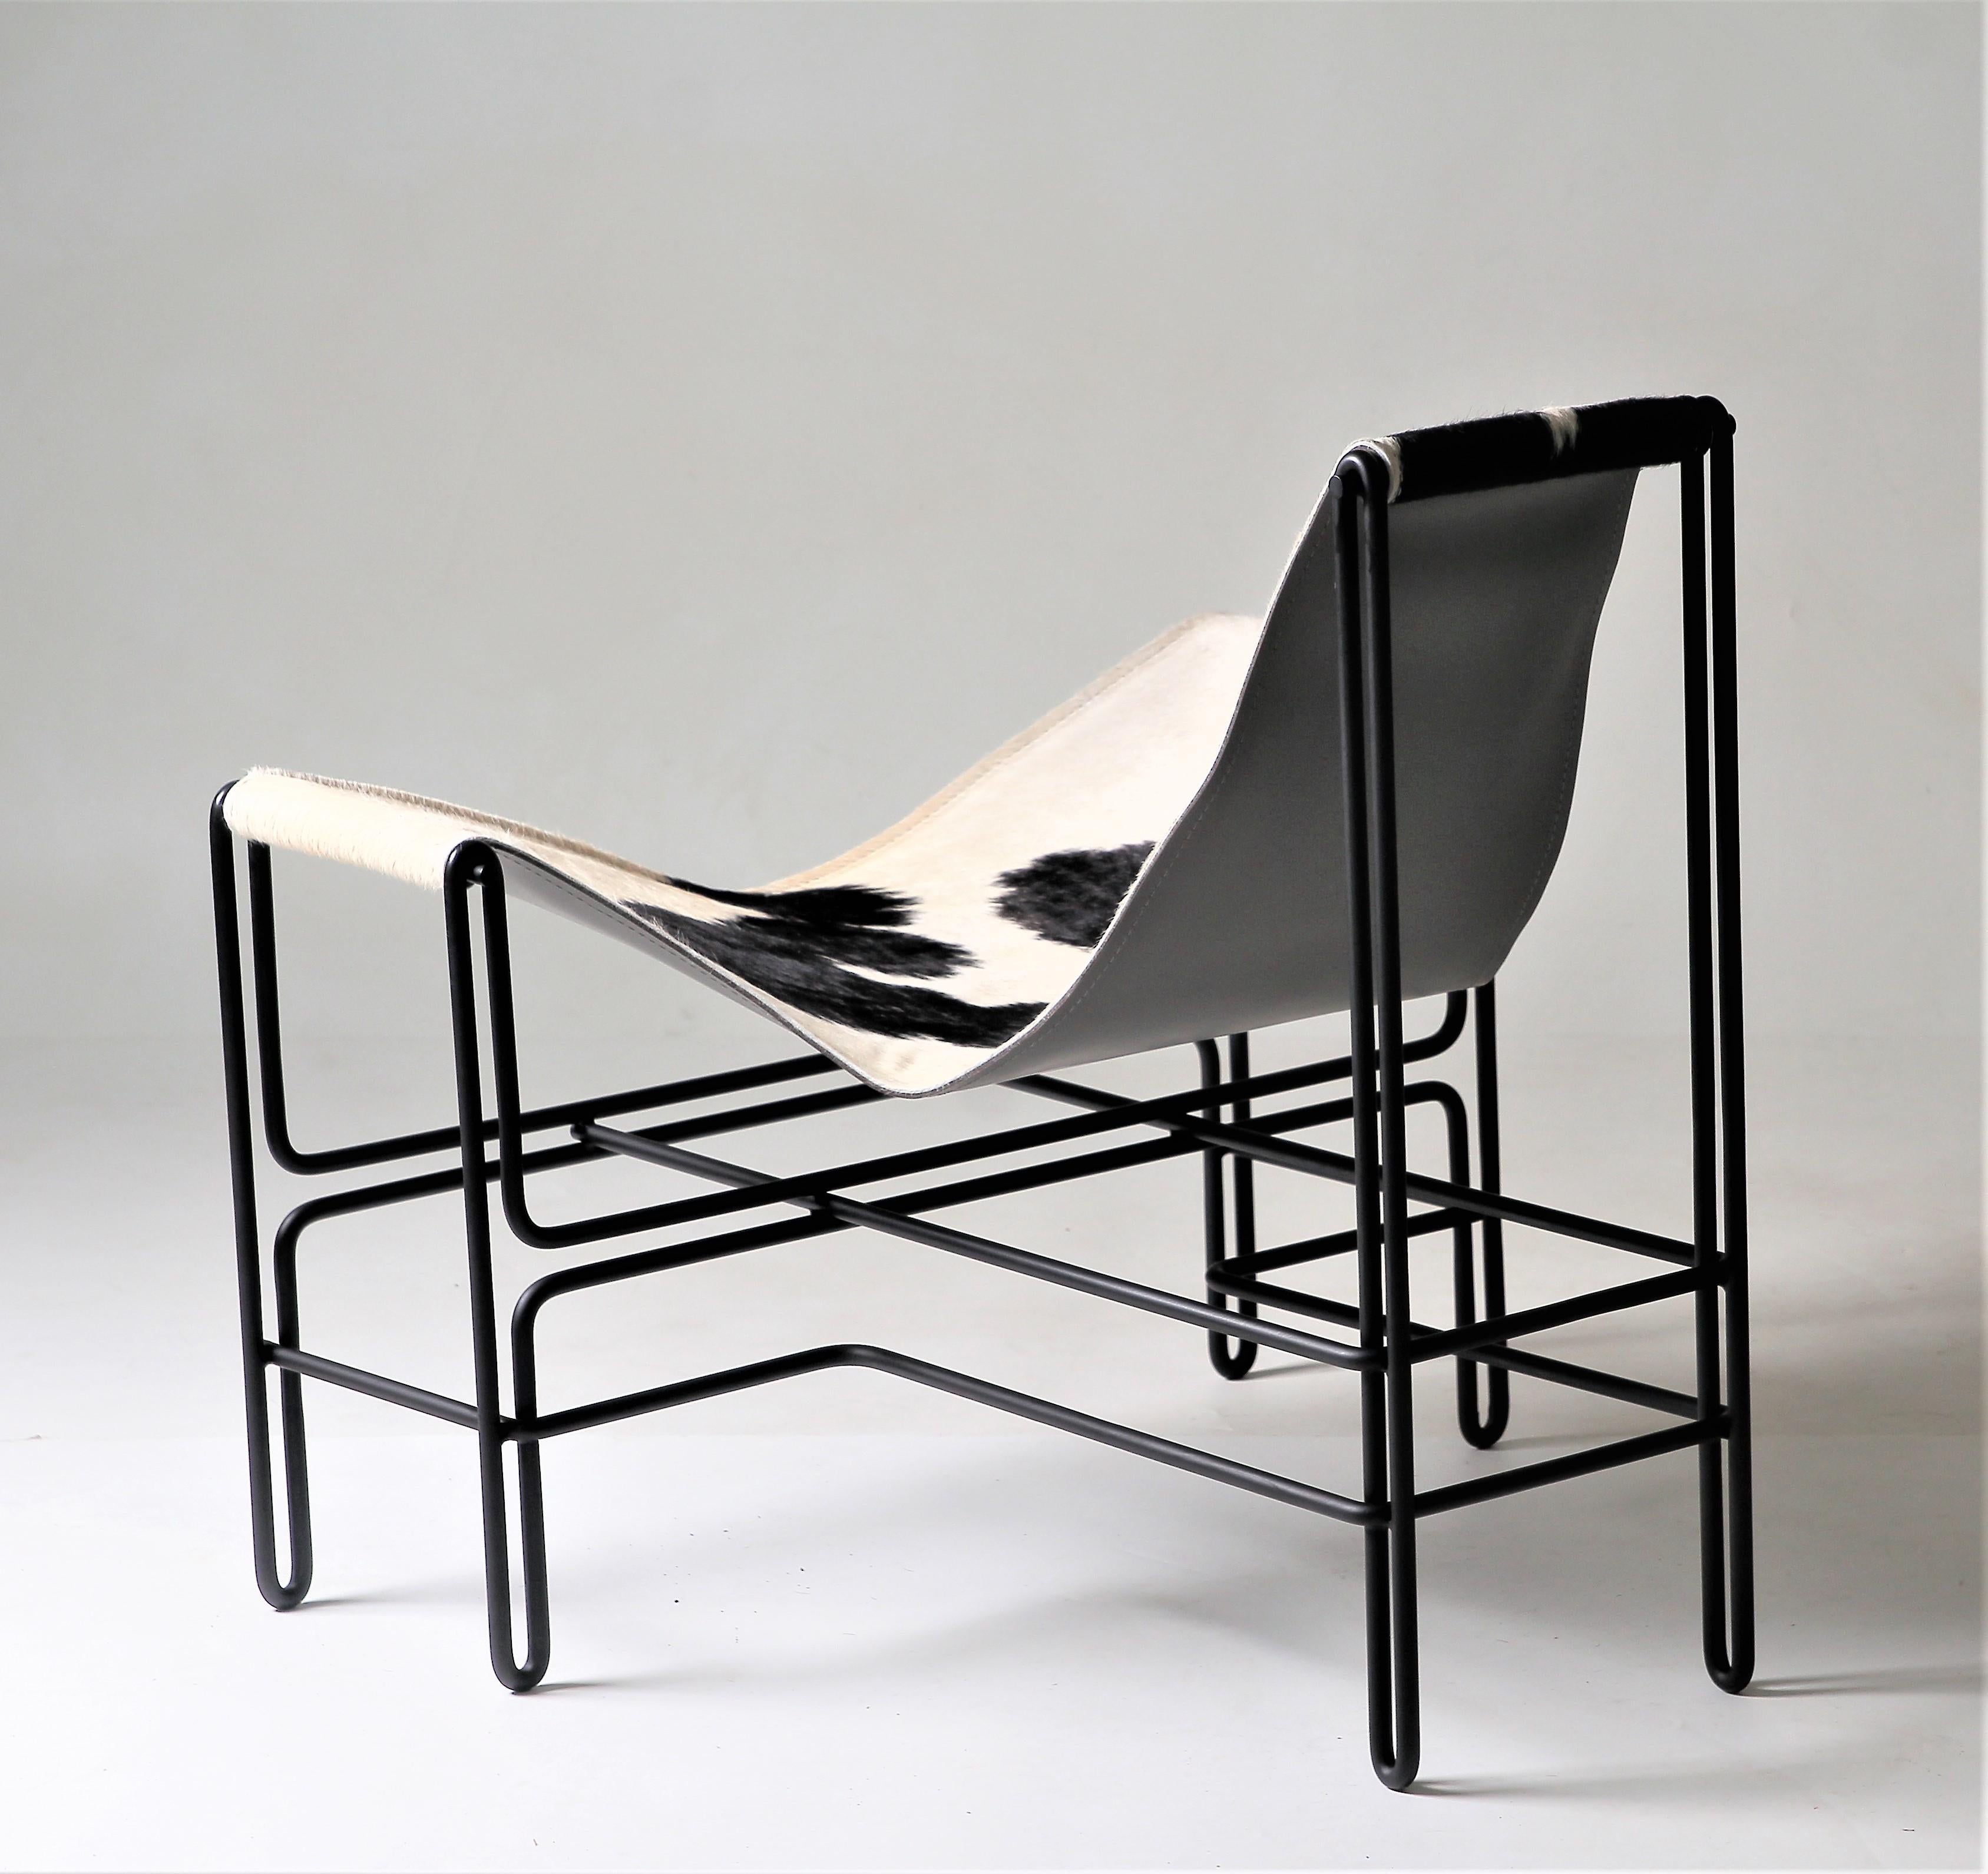 Cet imposant fauteuil brésilien en acier et cuir est caractérisé par des lignes géométriques qui contrastent avec la douceur de l'assise en cuir naturel. Tous les éléments structurels sont indispensables à sa stabilité et sont disposés avec une